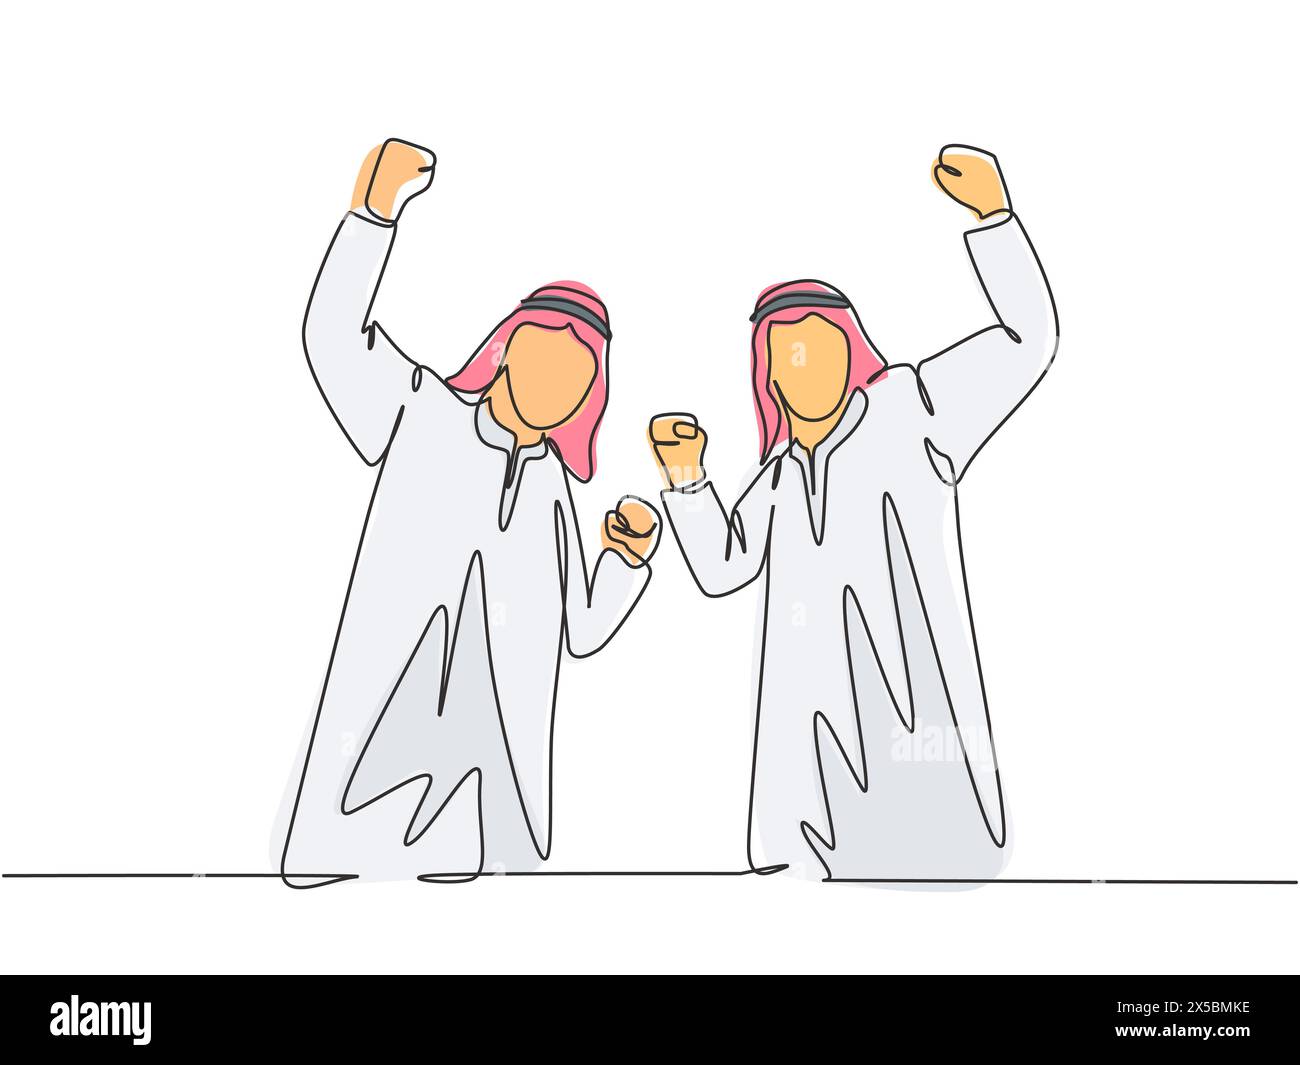 Eine einzige Zeilenzeichnung junger, glücklicher muslimischer Mitarbeiter feiert ihre berufliche Beförderung. Saudi-Arabier mit Shmag; Kandora; Kopftuch; Thobe; Gghutra. Co Stock Vektor